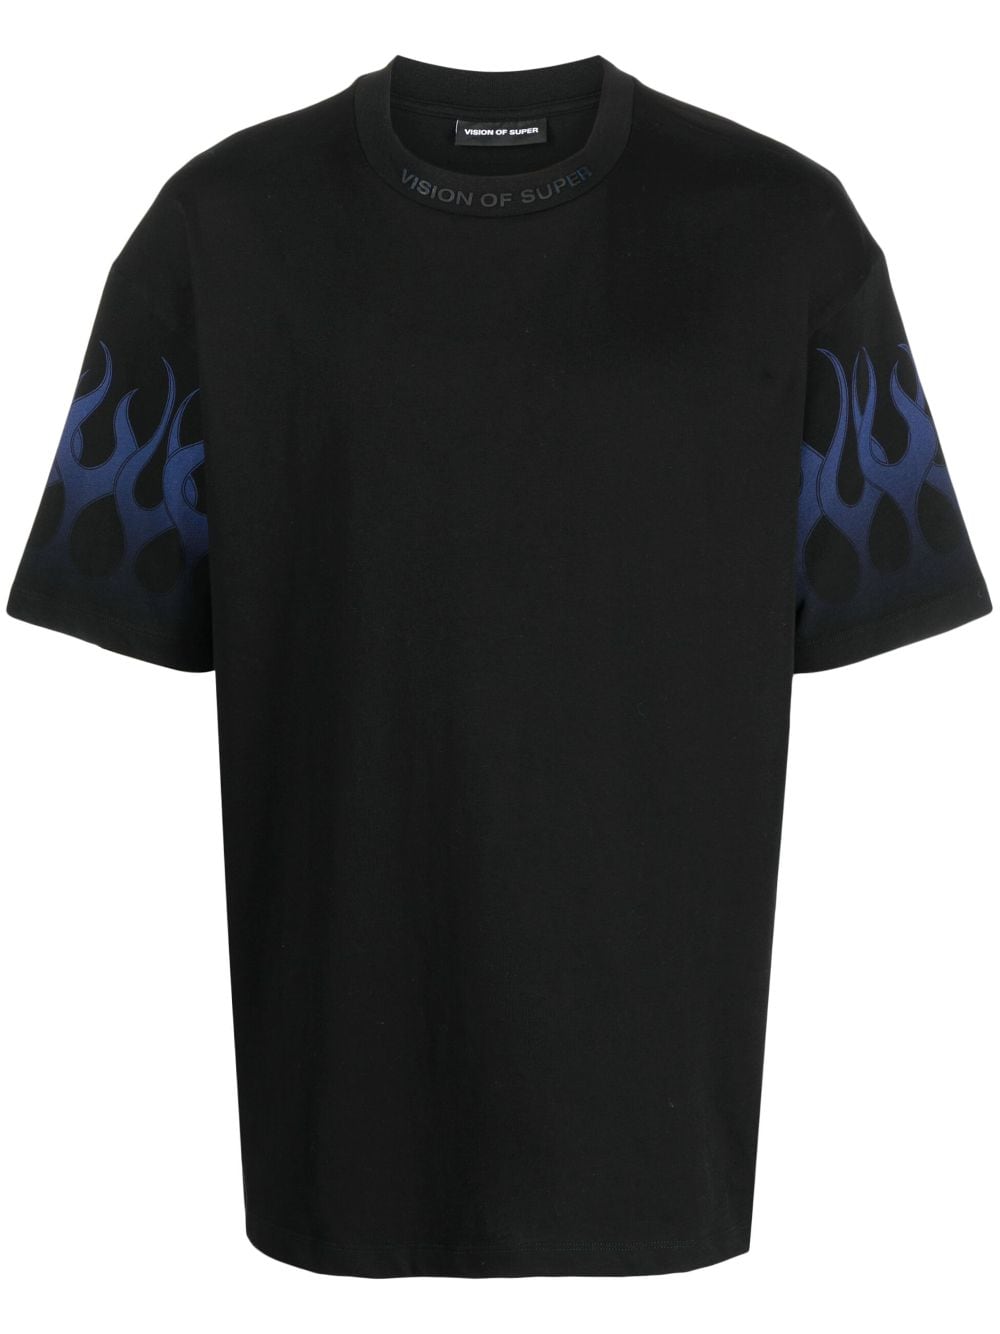 vision of super t-shirt en coton à manches courtes - noir